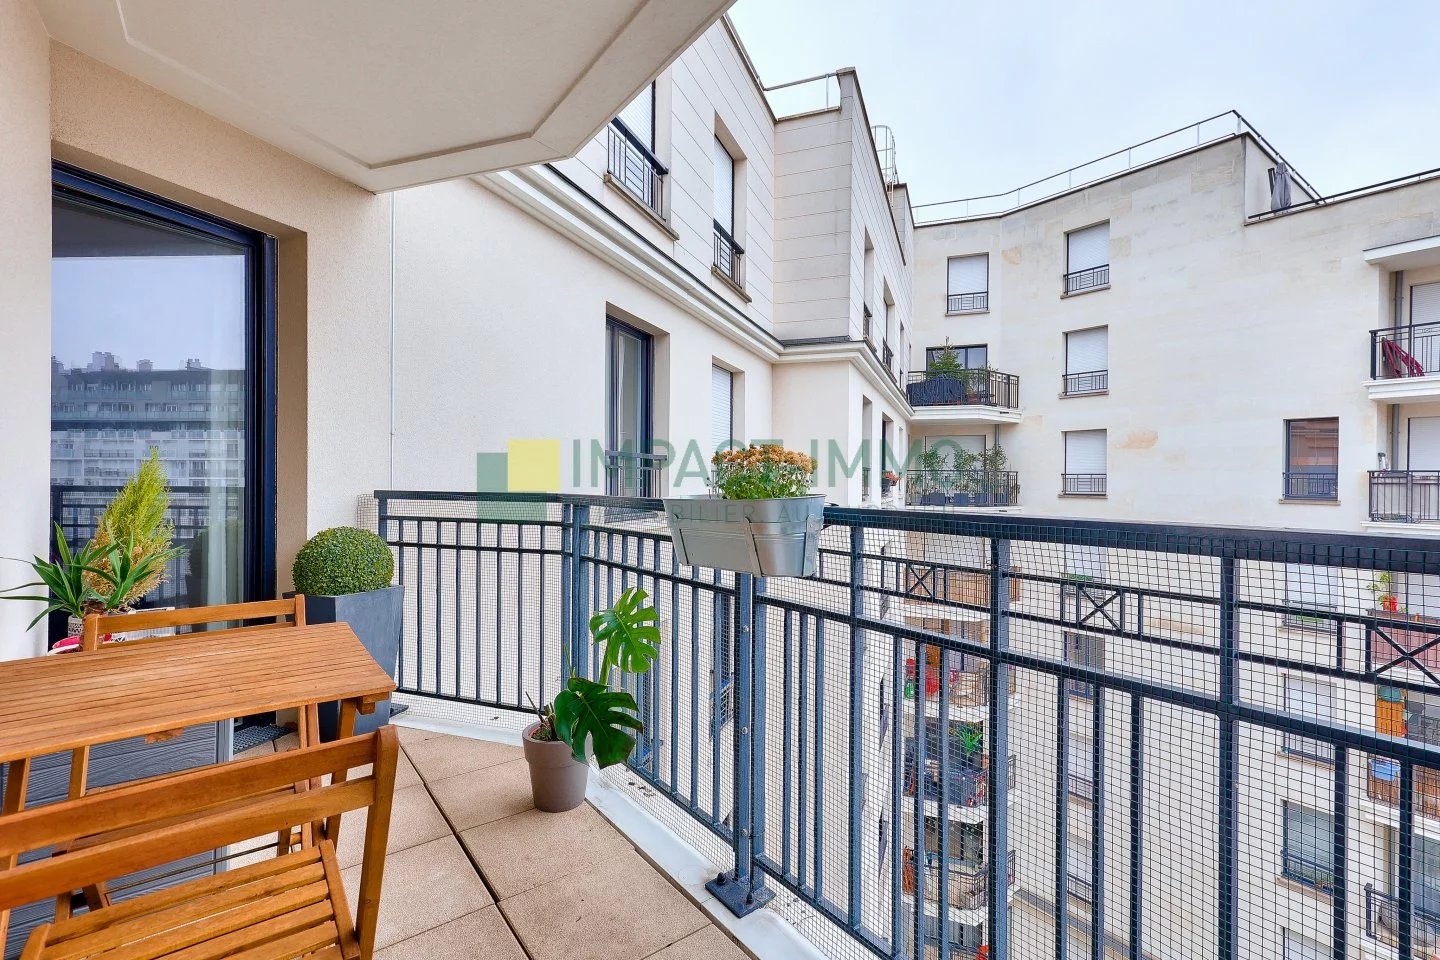 EXCLUSIVITÉ - Appartement 3 pièces étage élevé avec terrasse - FRANCO SUISSE